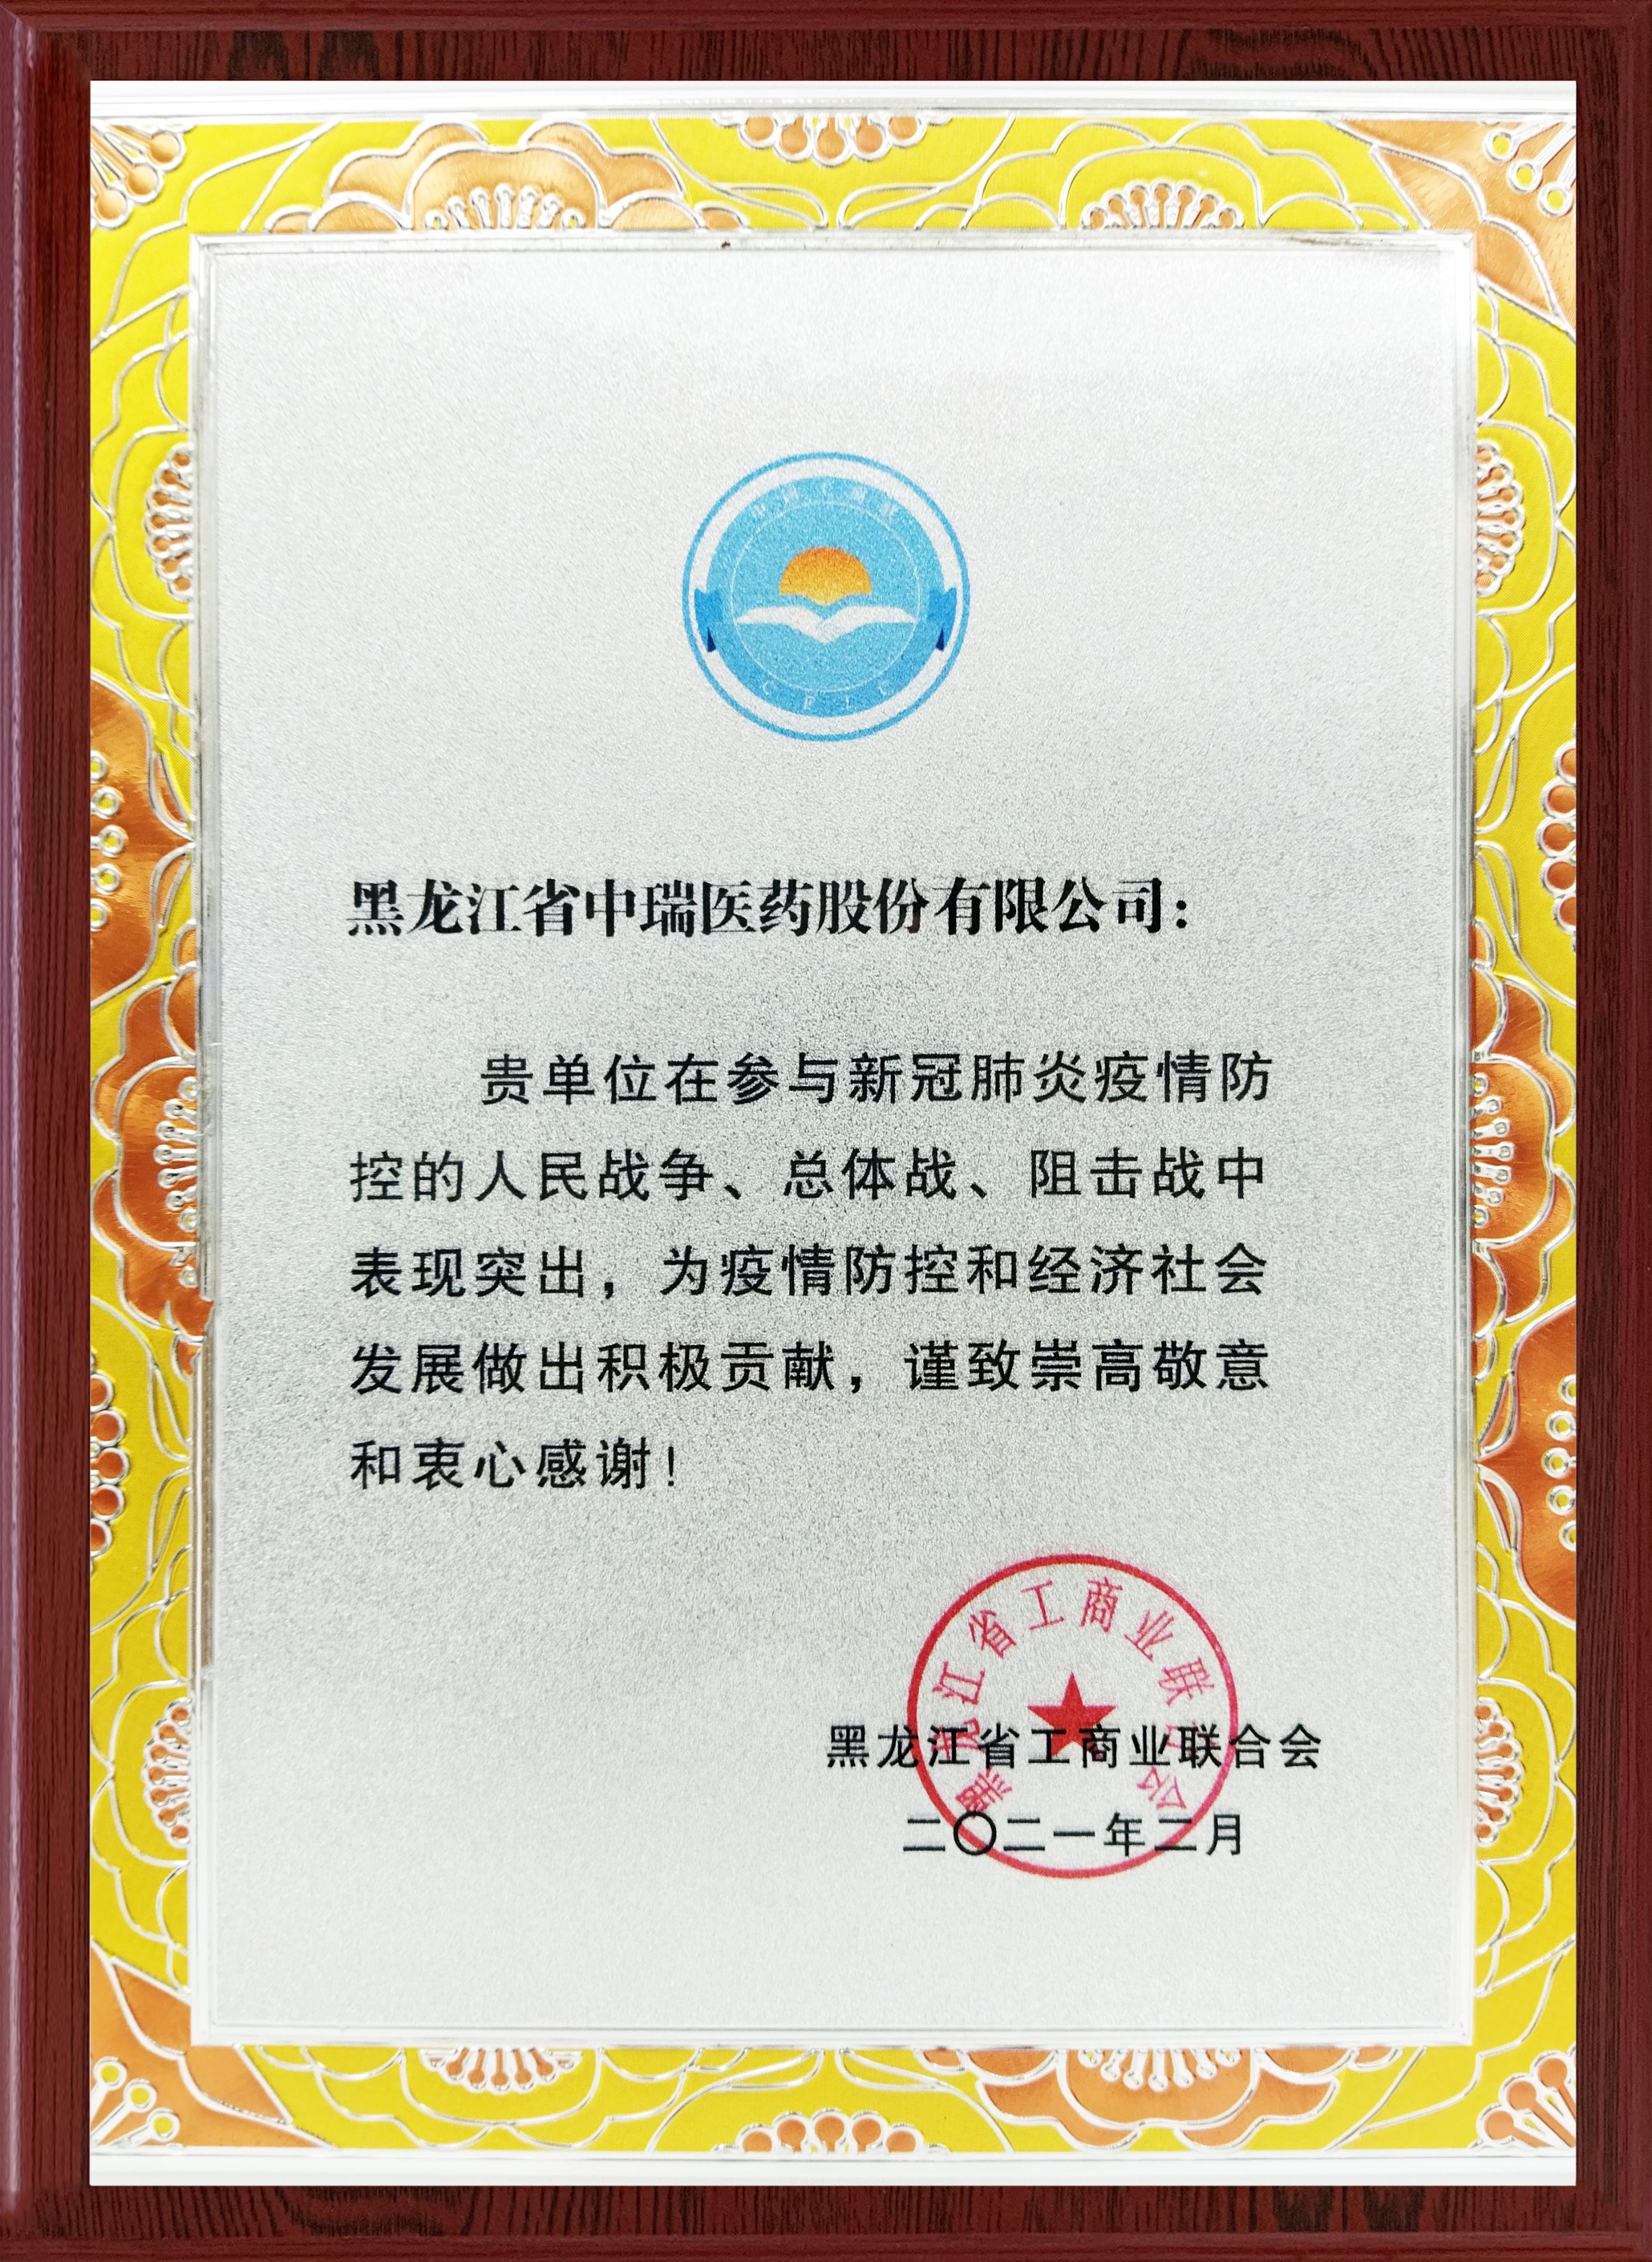 践初心、作表率 ——哈尔滨市广东商会获得多项荣誉表彰(图8)